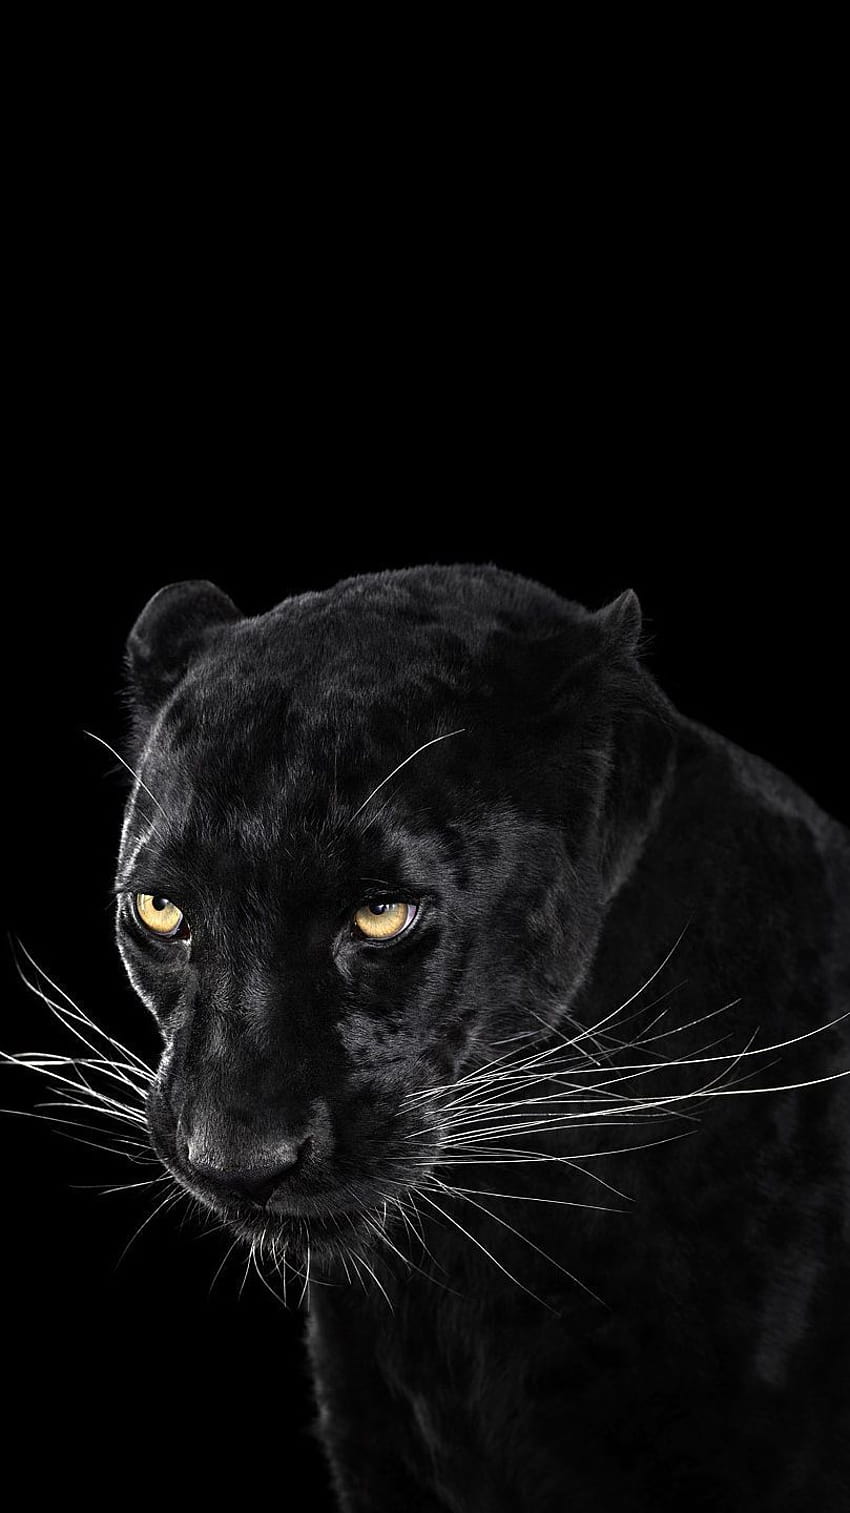 Black Panther Animal iPhone, kucing besar panther hitam wallpaper ponsel HD